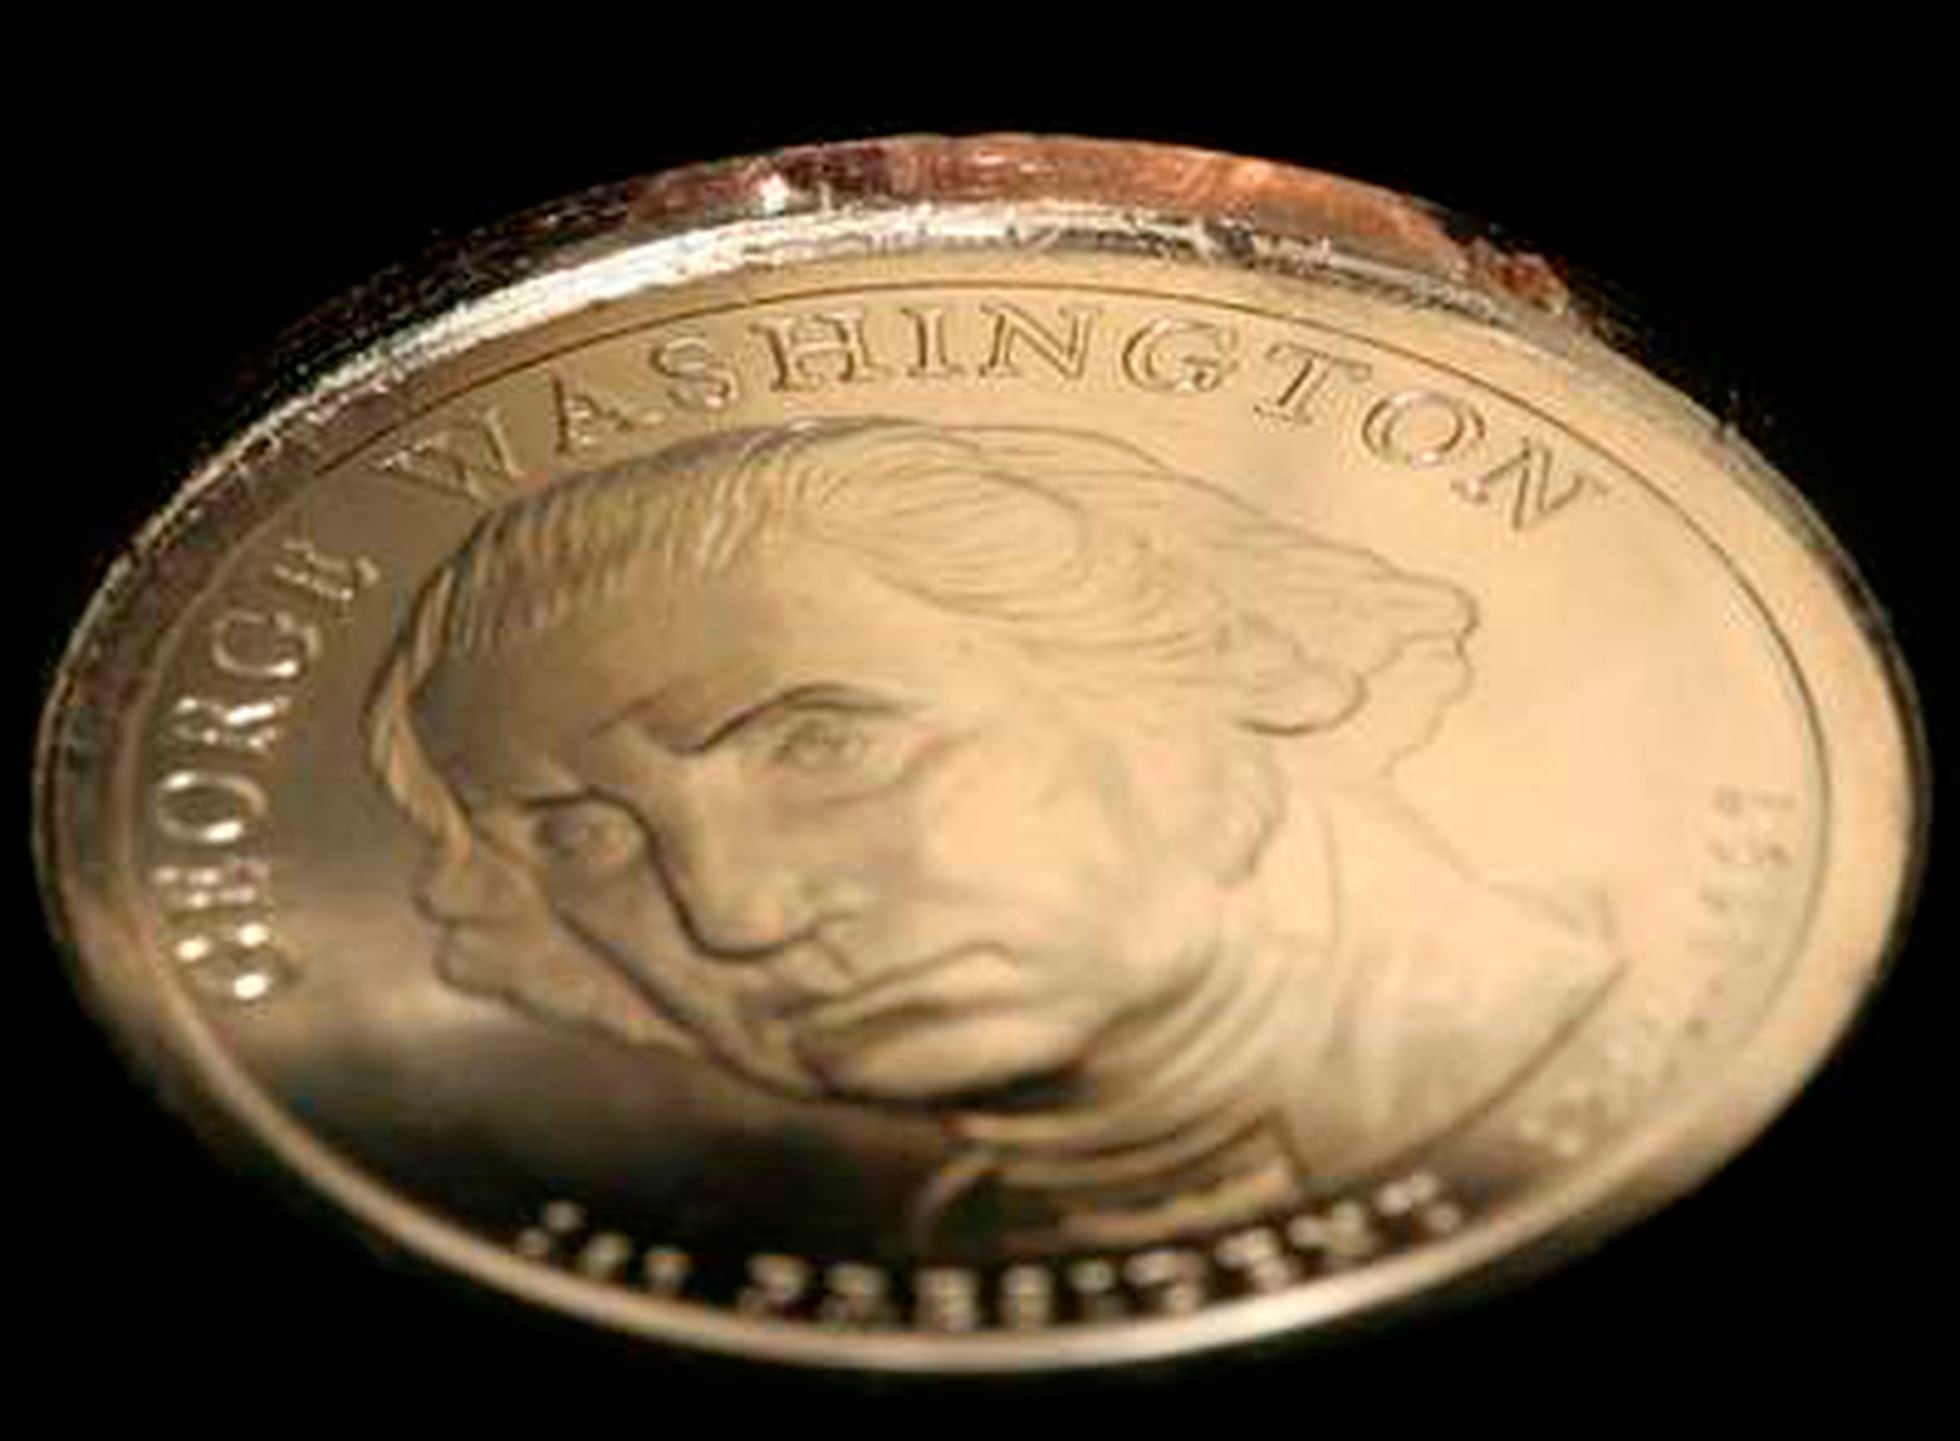 Un error de fabricación de una moneda de 1 euro dispara su valor 